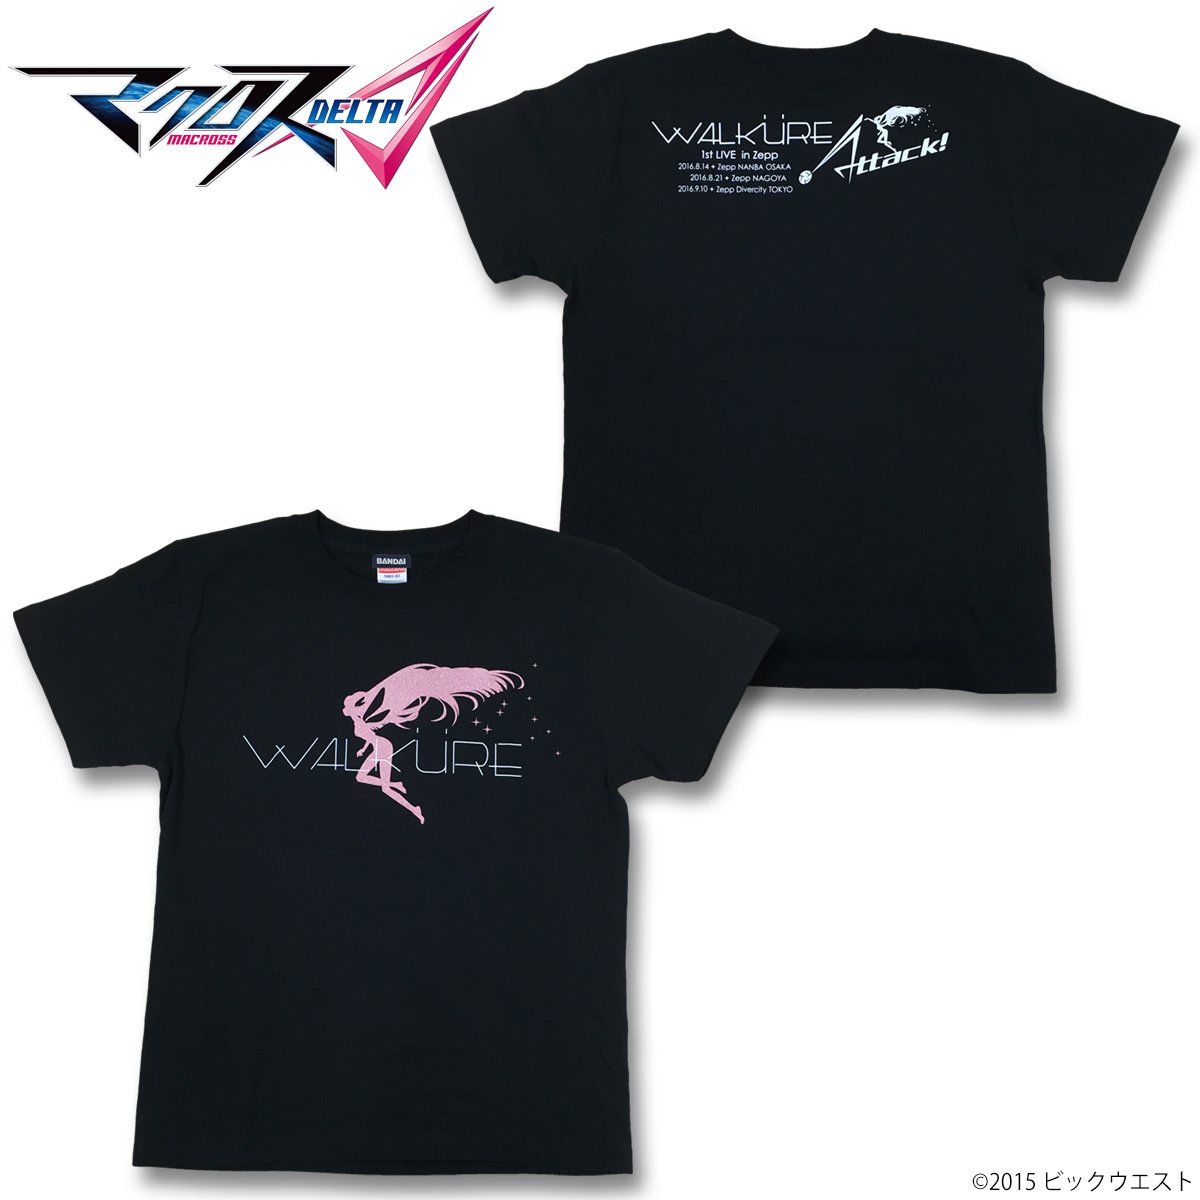 マクロスd Walkureライブ Tシャツ マクロスシリーズ プレミアムバンダイ公式通販